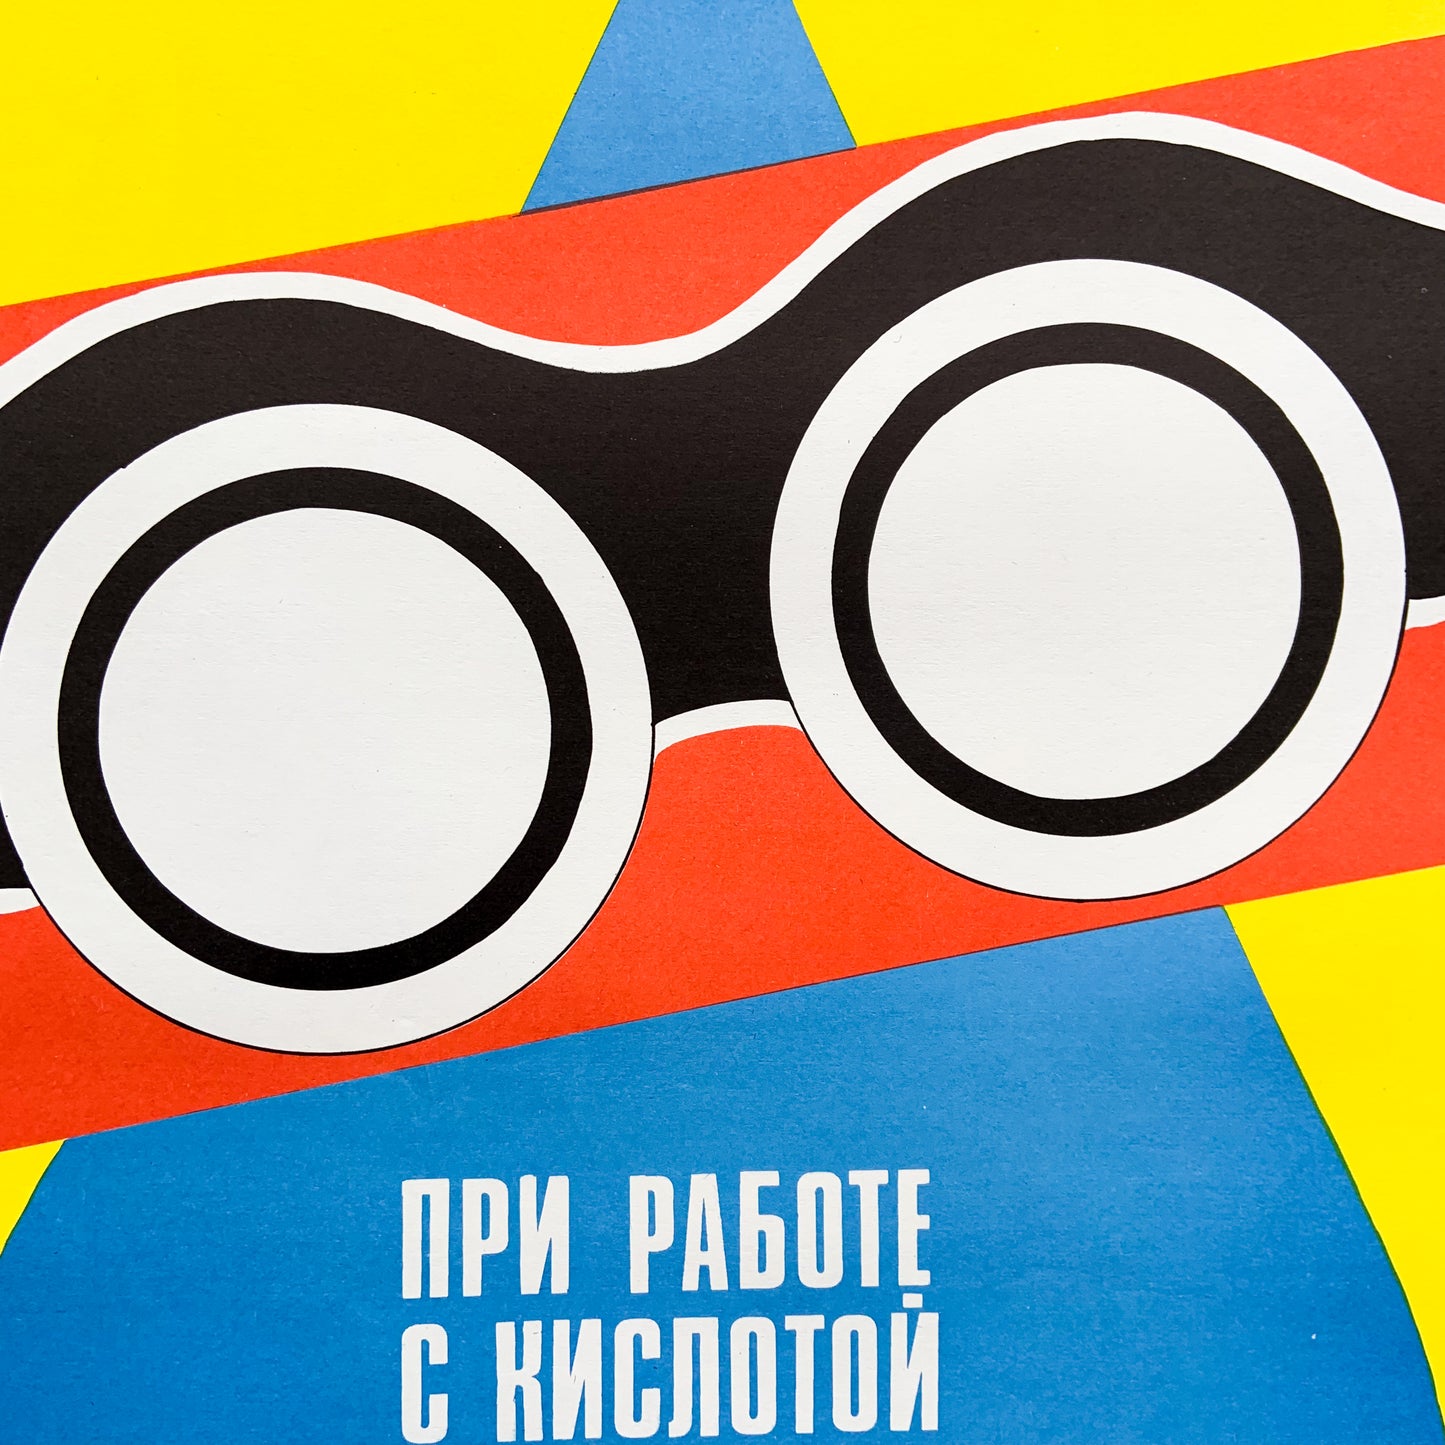 1990 Soviet Work Safety Poster #P1193 - 17" x 23"